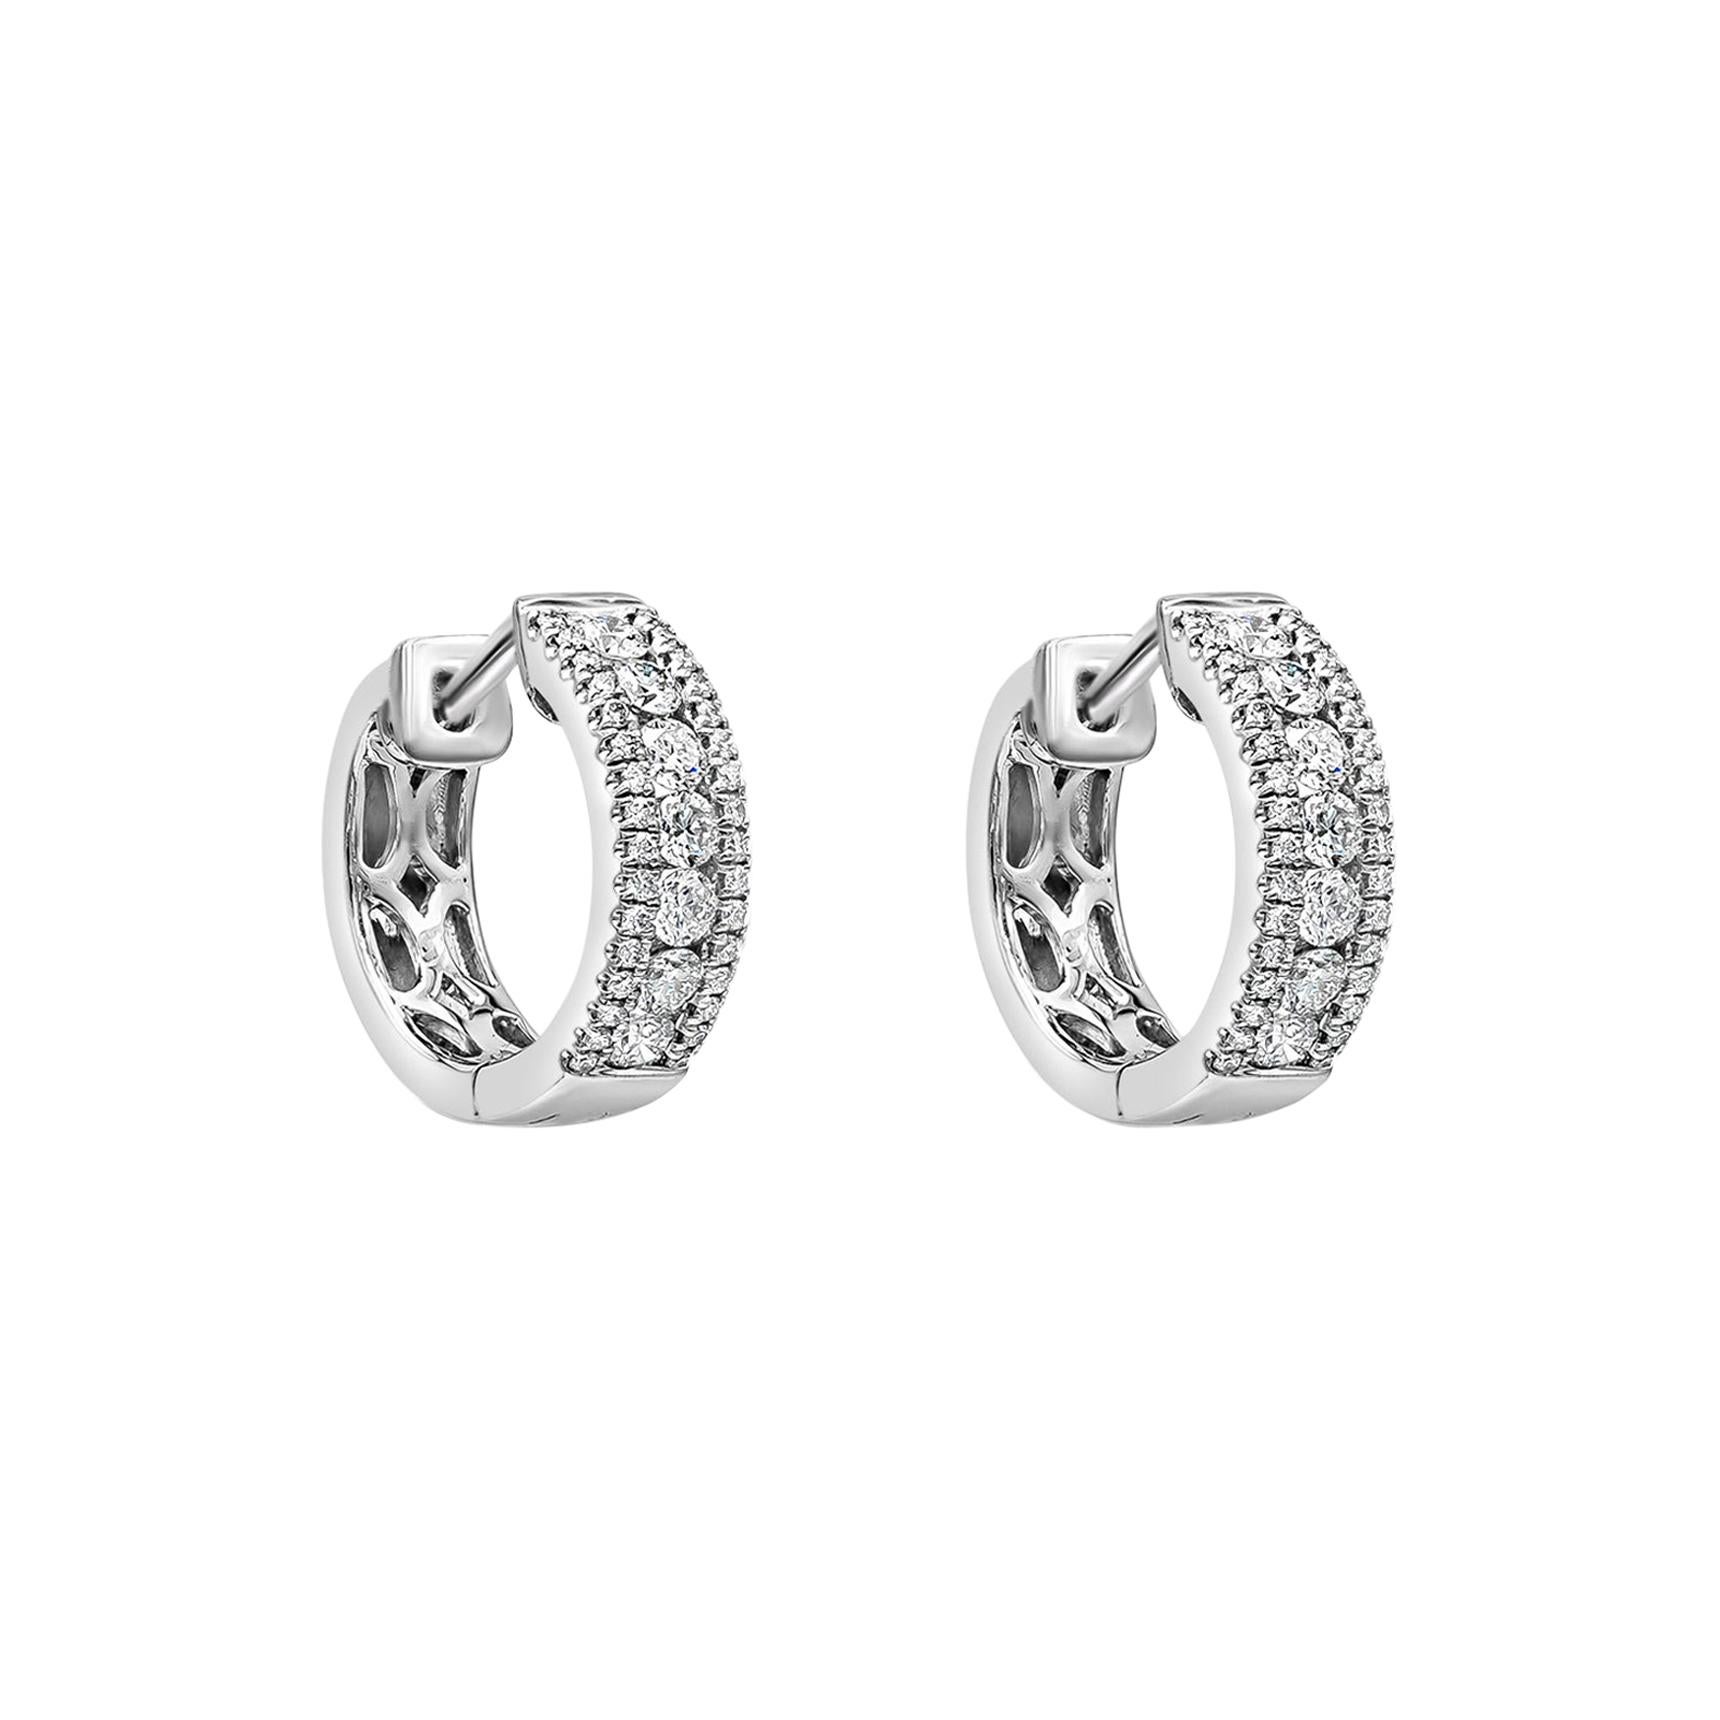 Große Huggie-Ohrringe von Roman Malakov mit 0,63 Karat runden Diamanten in runder Form